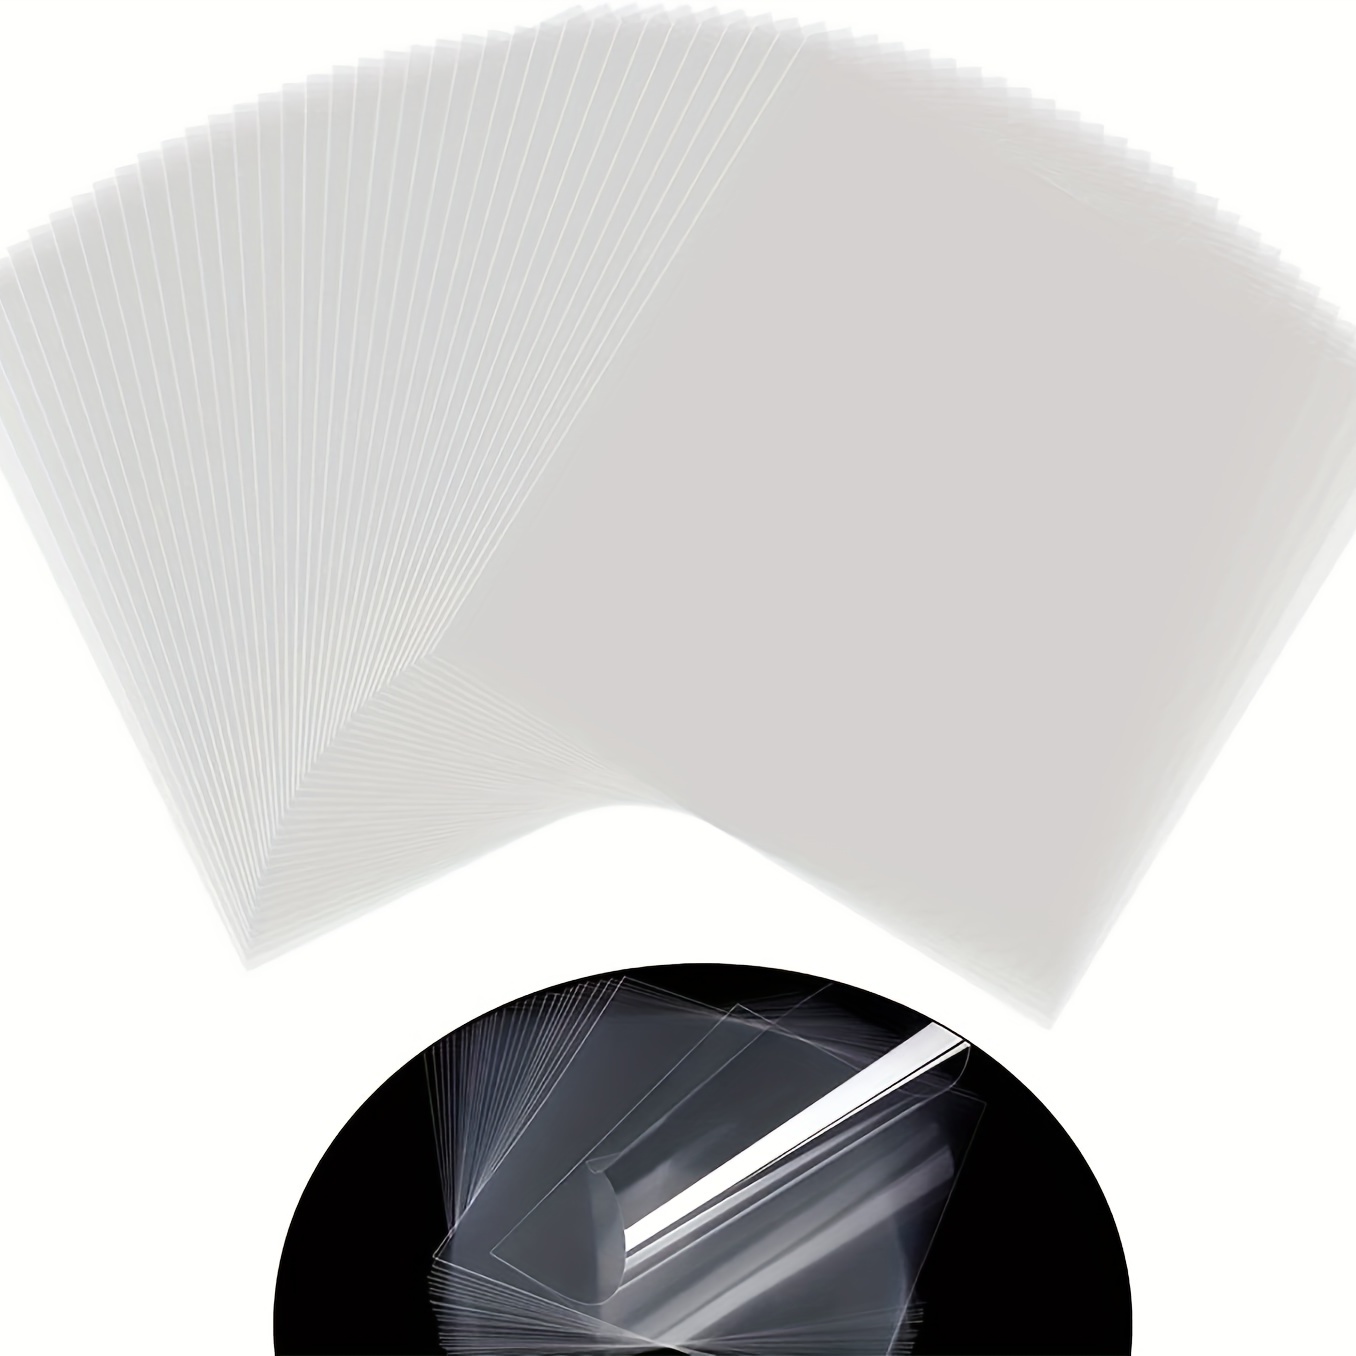 Plaque ronde en feuille acrylique transparente avec disque, pour peinture,  bricolage artisanal, ornement vierge avec trou